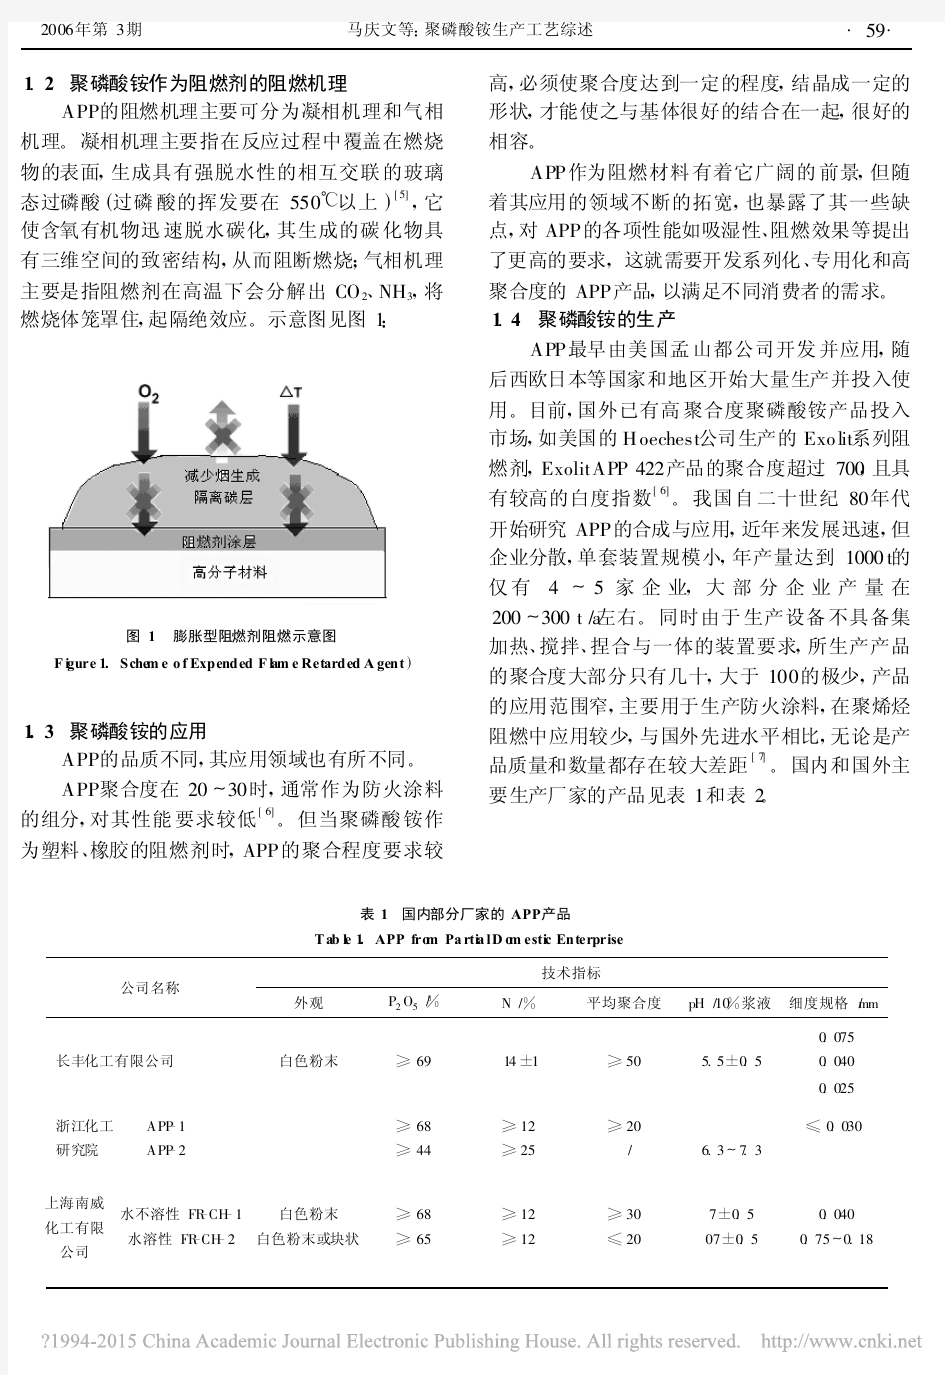 聚磷酸铵生产工艺综述_马庆文 (1)